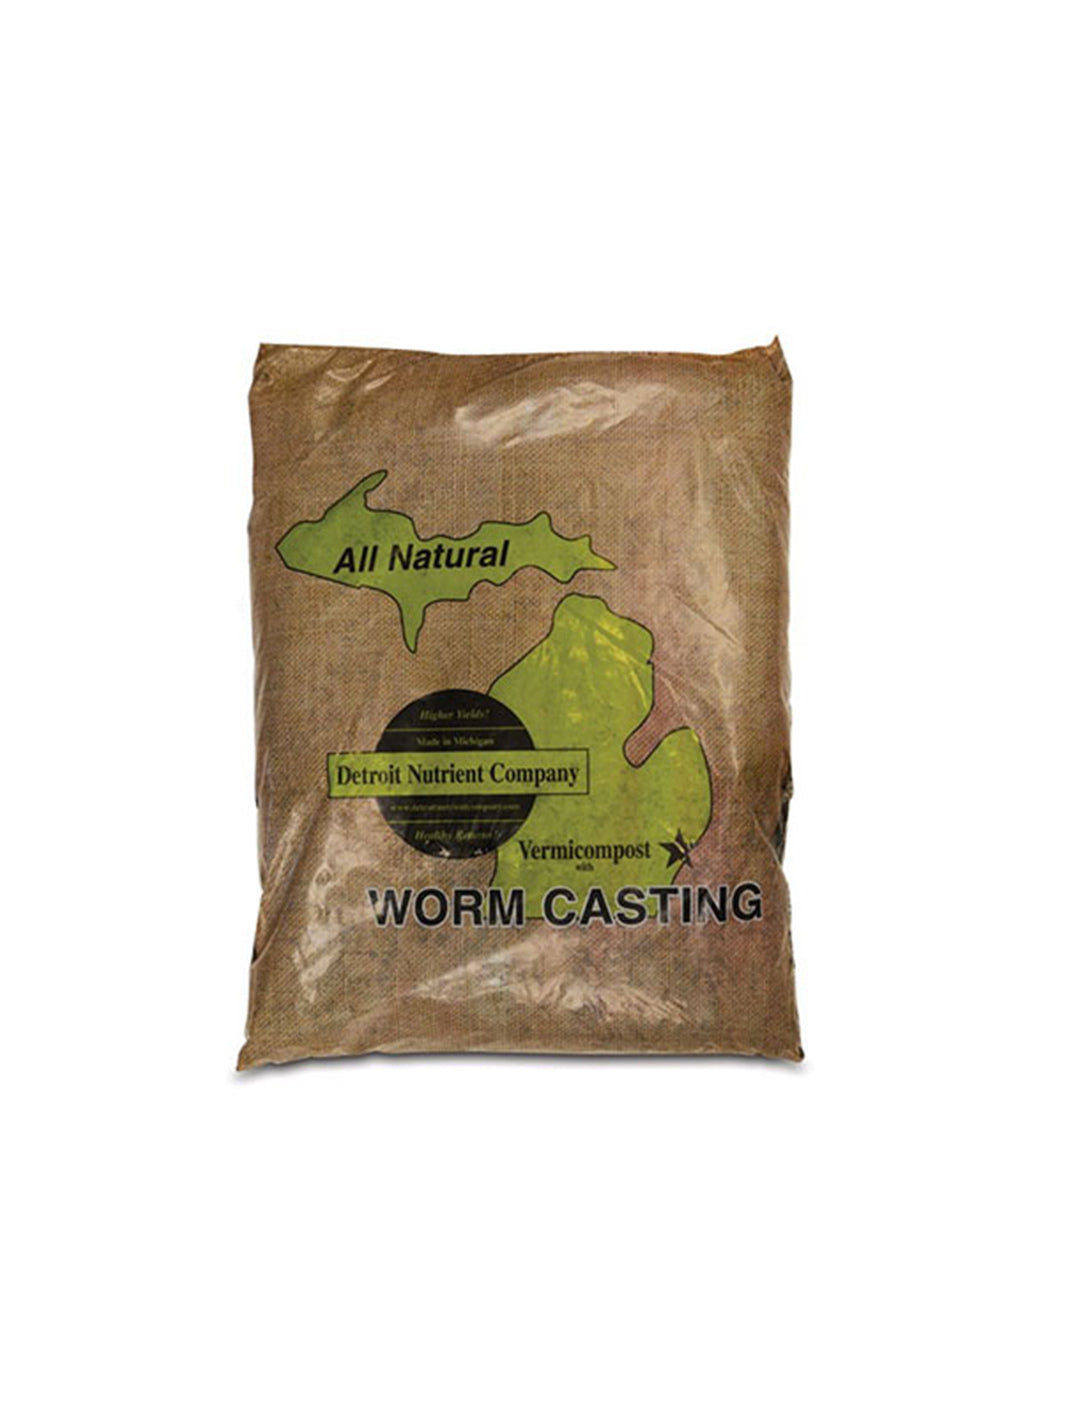 worm casting compost tea detroit nutrient company